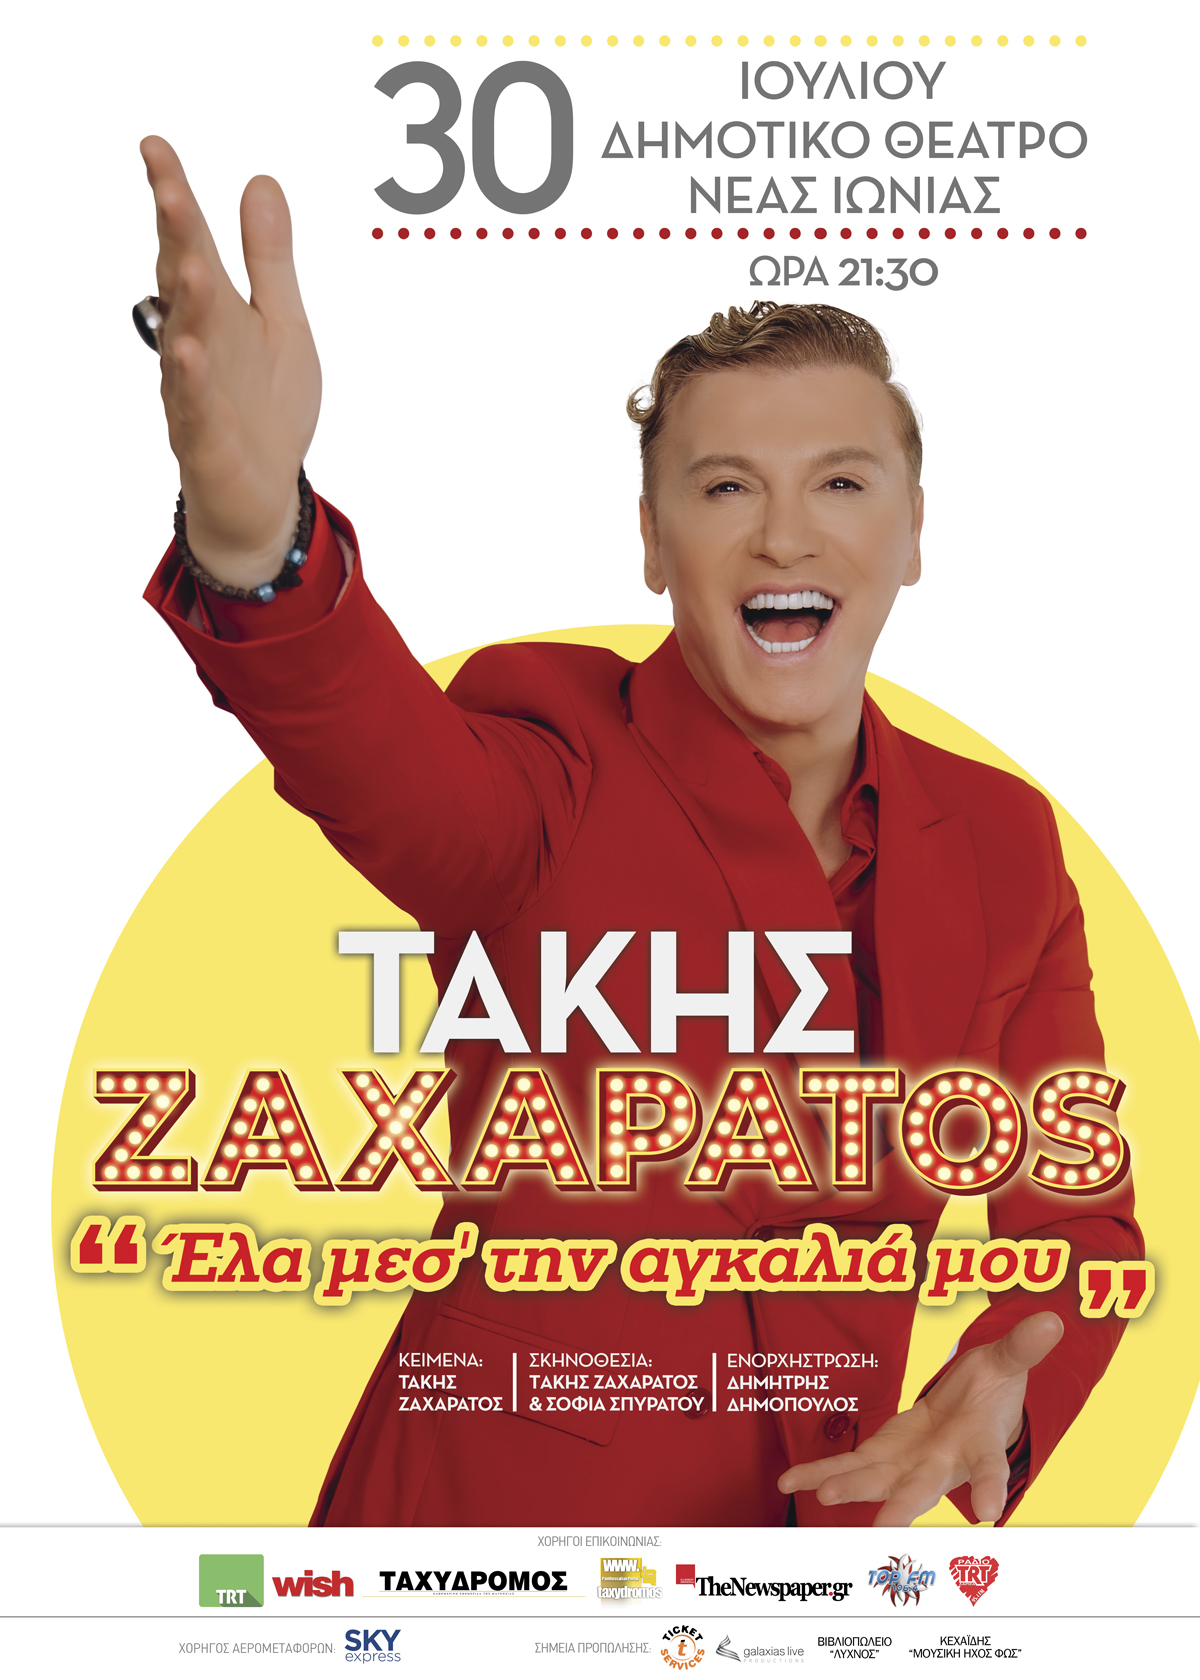 Takis Zacharatos6